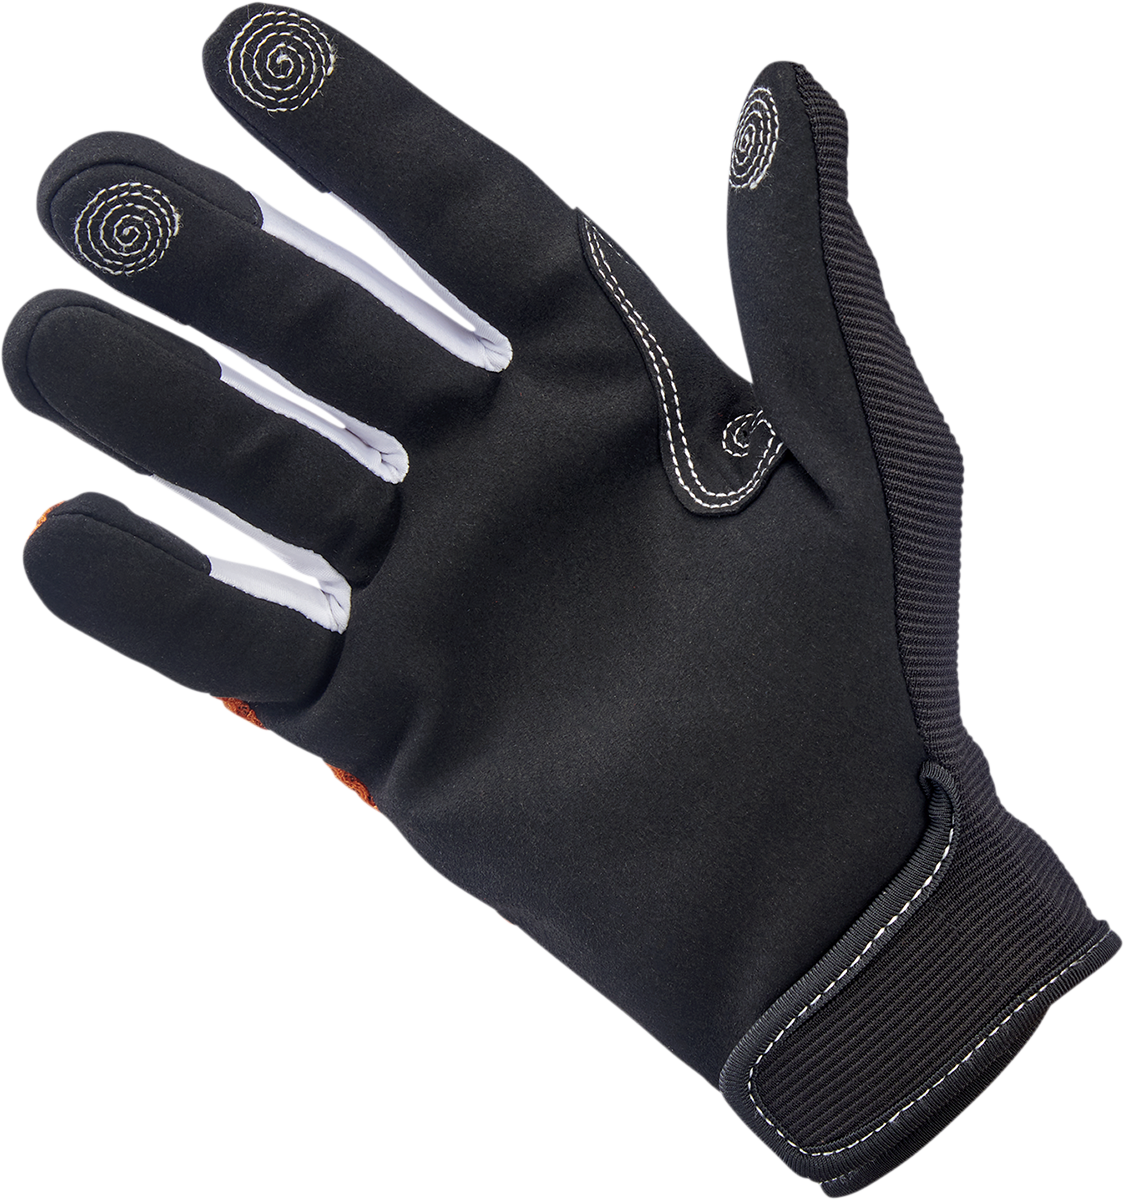 BILTWELL Anza Gloves - Orange - Medium 1507-0601-003